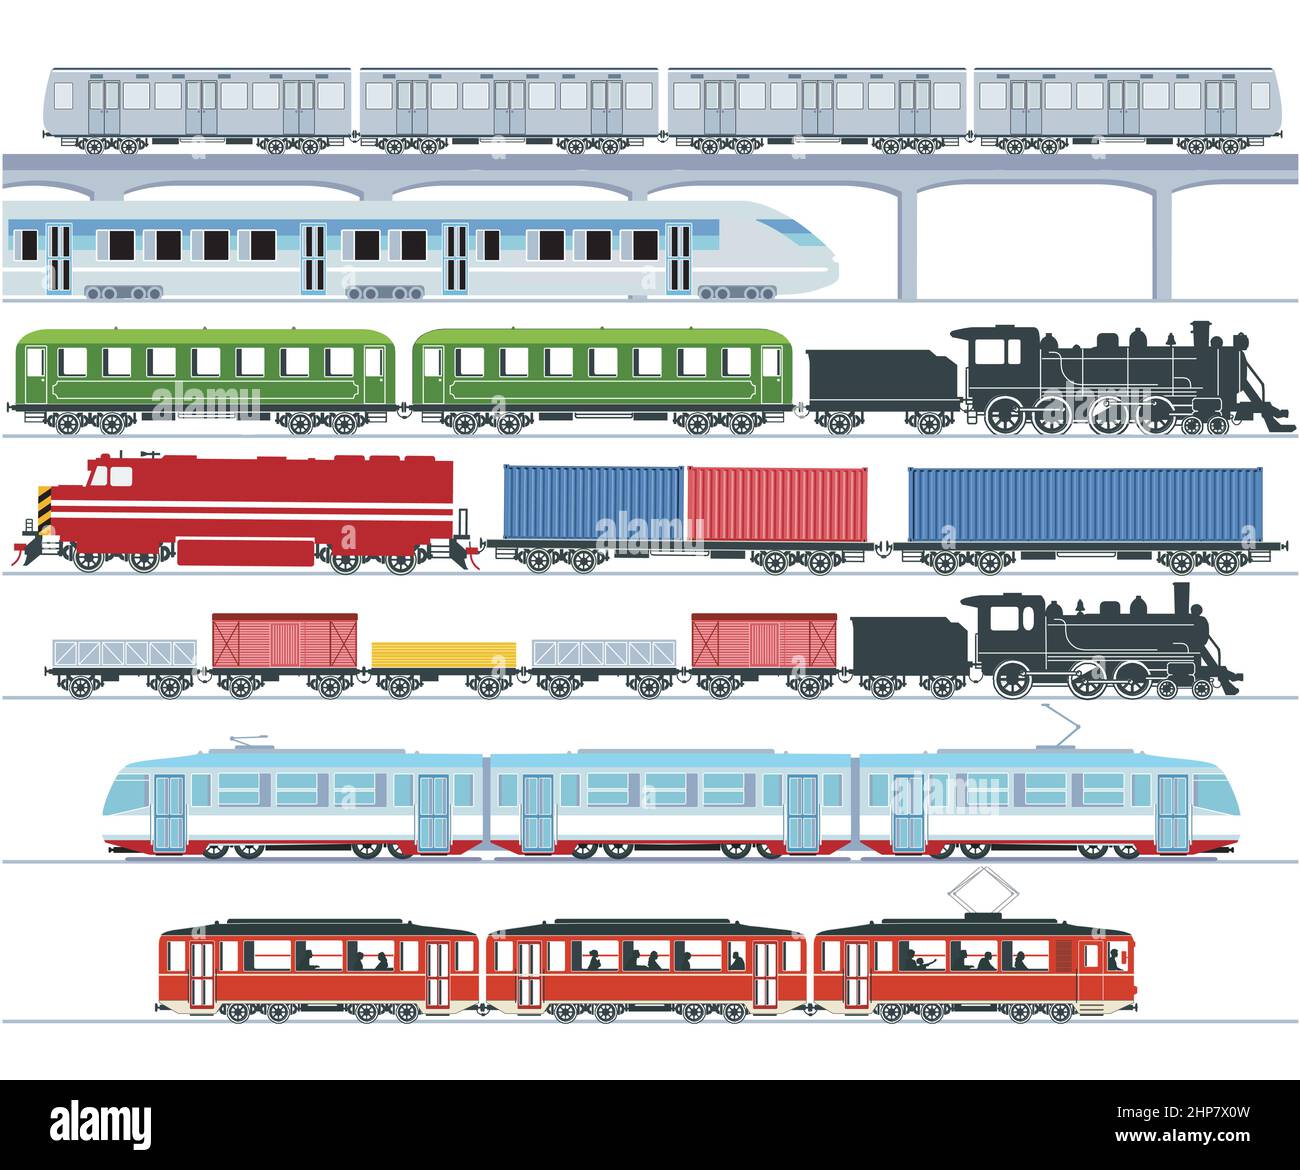 Satz von modernen Personenzügen, U-Bahn-Verkehr, Hochgeschwindigkeitszüge und U-Bahn, Straßenbahn, Güterzug - Illustration Stock Vektor